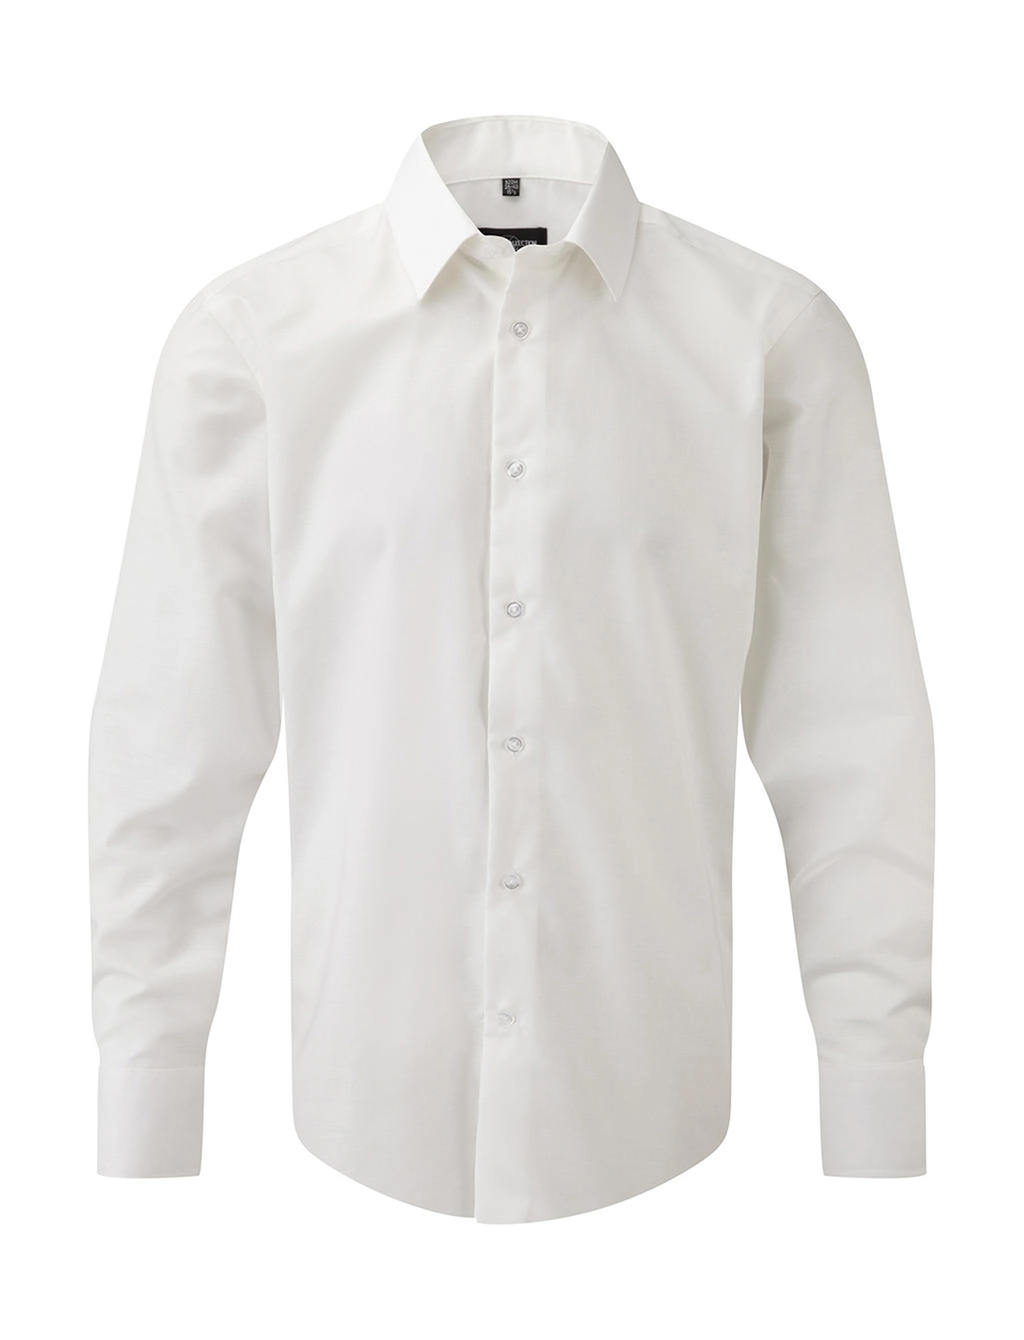 Oxford Shirt LS zum Besticken und Bedrucken in der Farbe White mit Ihren Logo, Schriftzug oder Motiv.